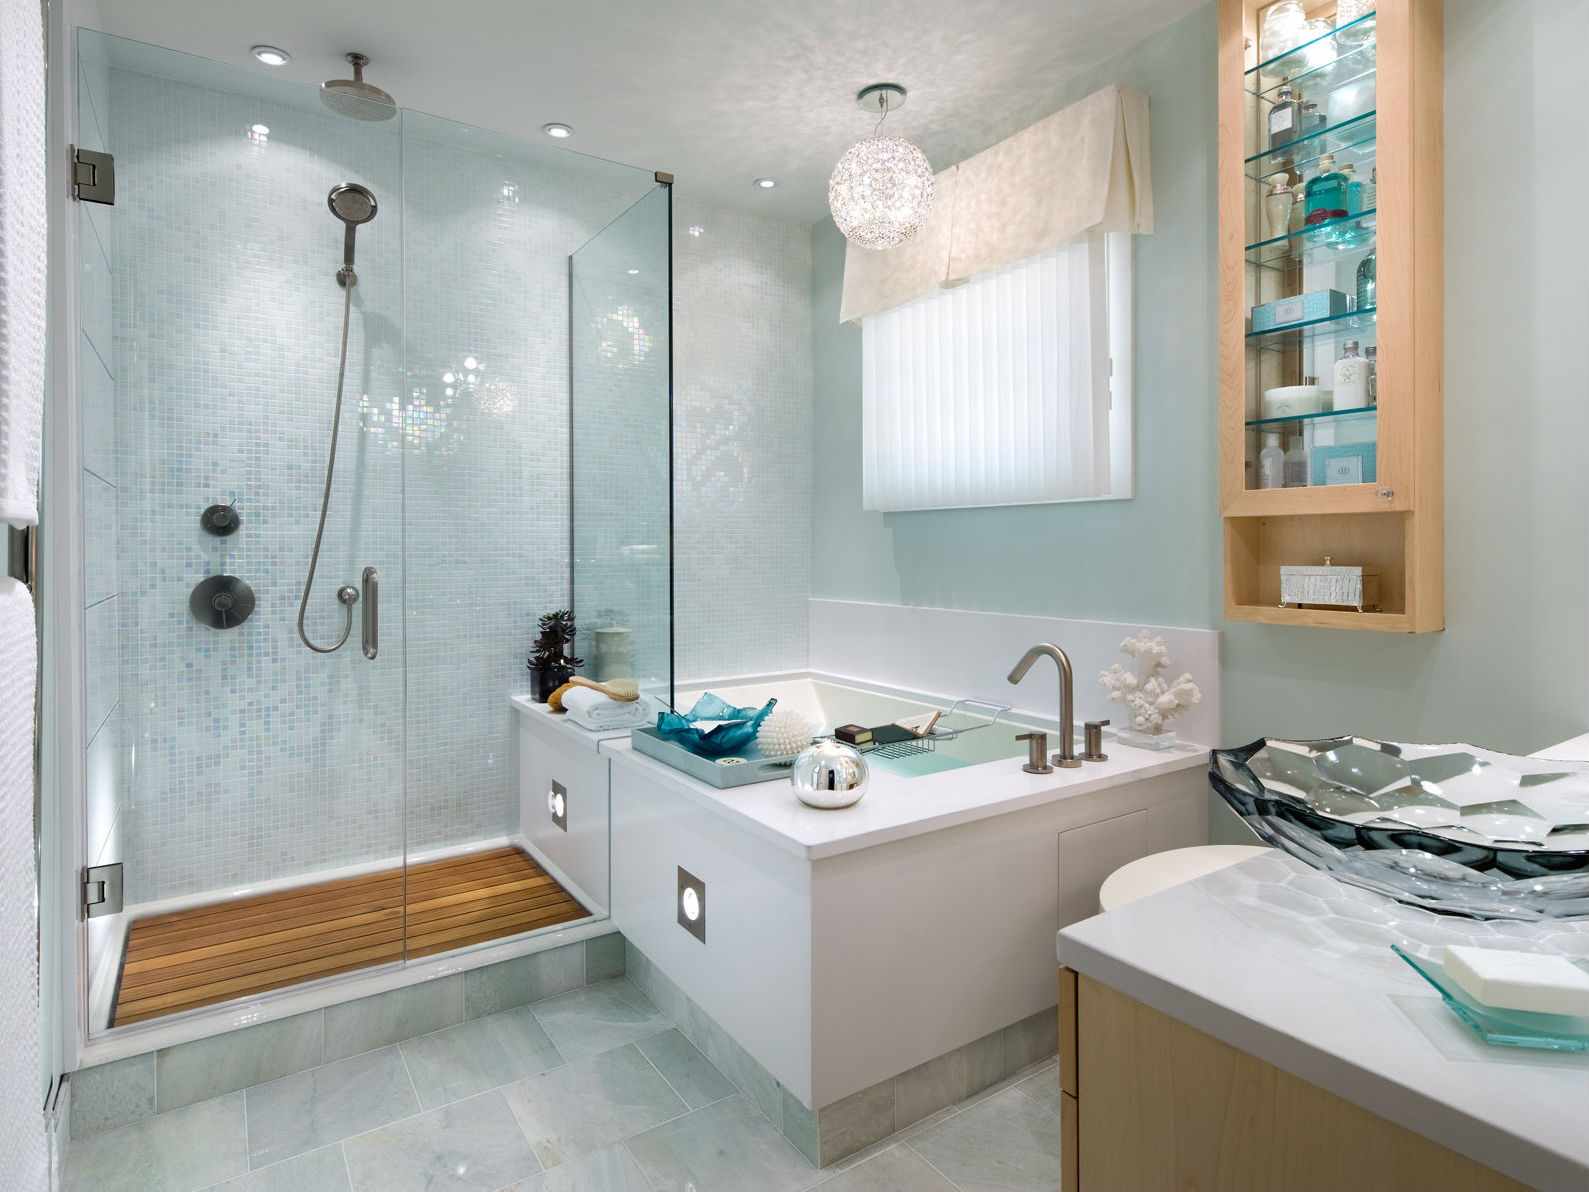 Un exemple de design de salle de bain léger